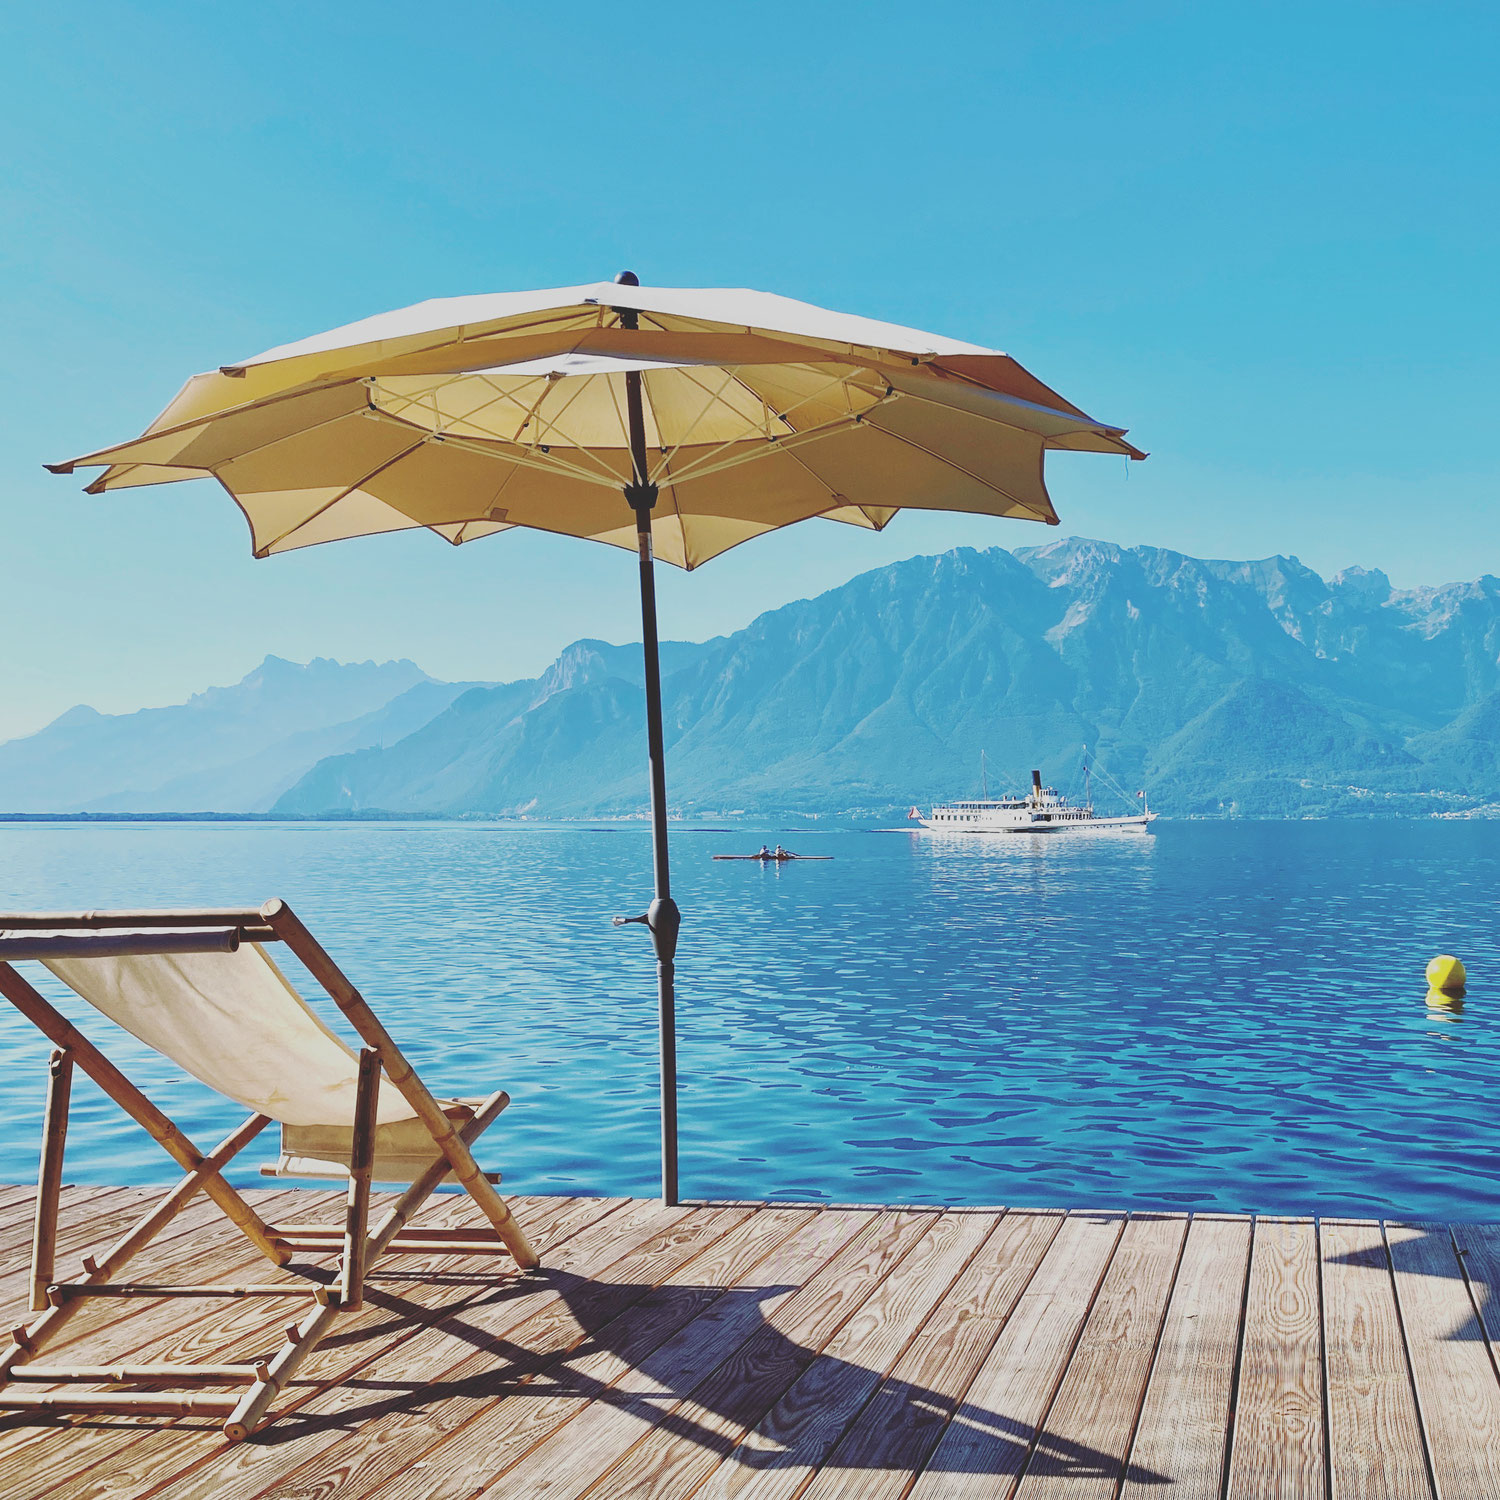 Fast wie eine Kreuzfahrt: Ein Wochenende in Montreux am Genfer See